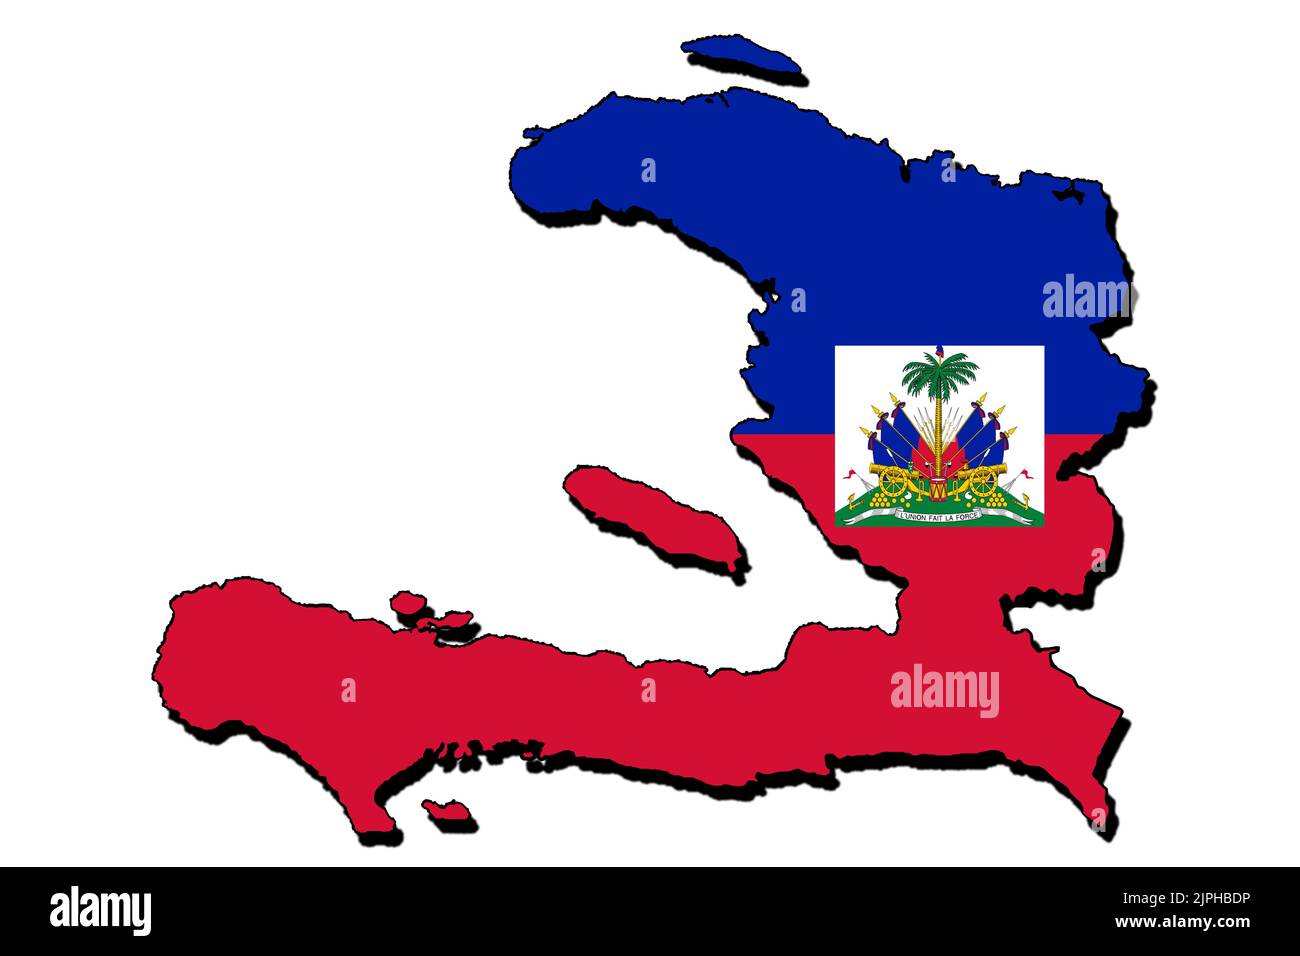 Silhouette de la carte d'Haïti avec son drapeau Banque D'Images